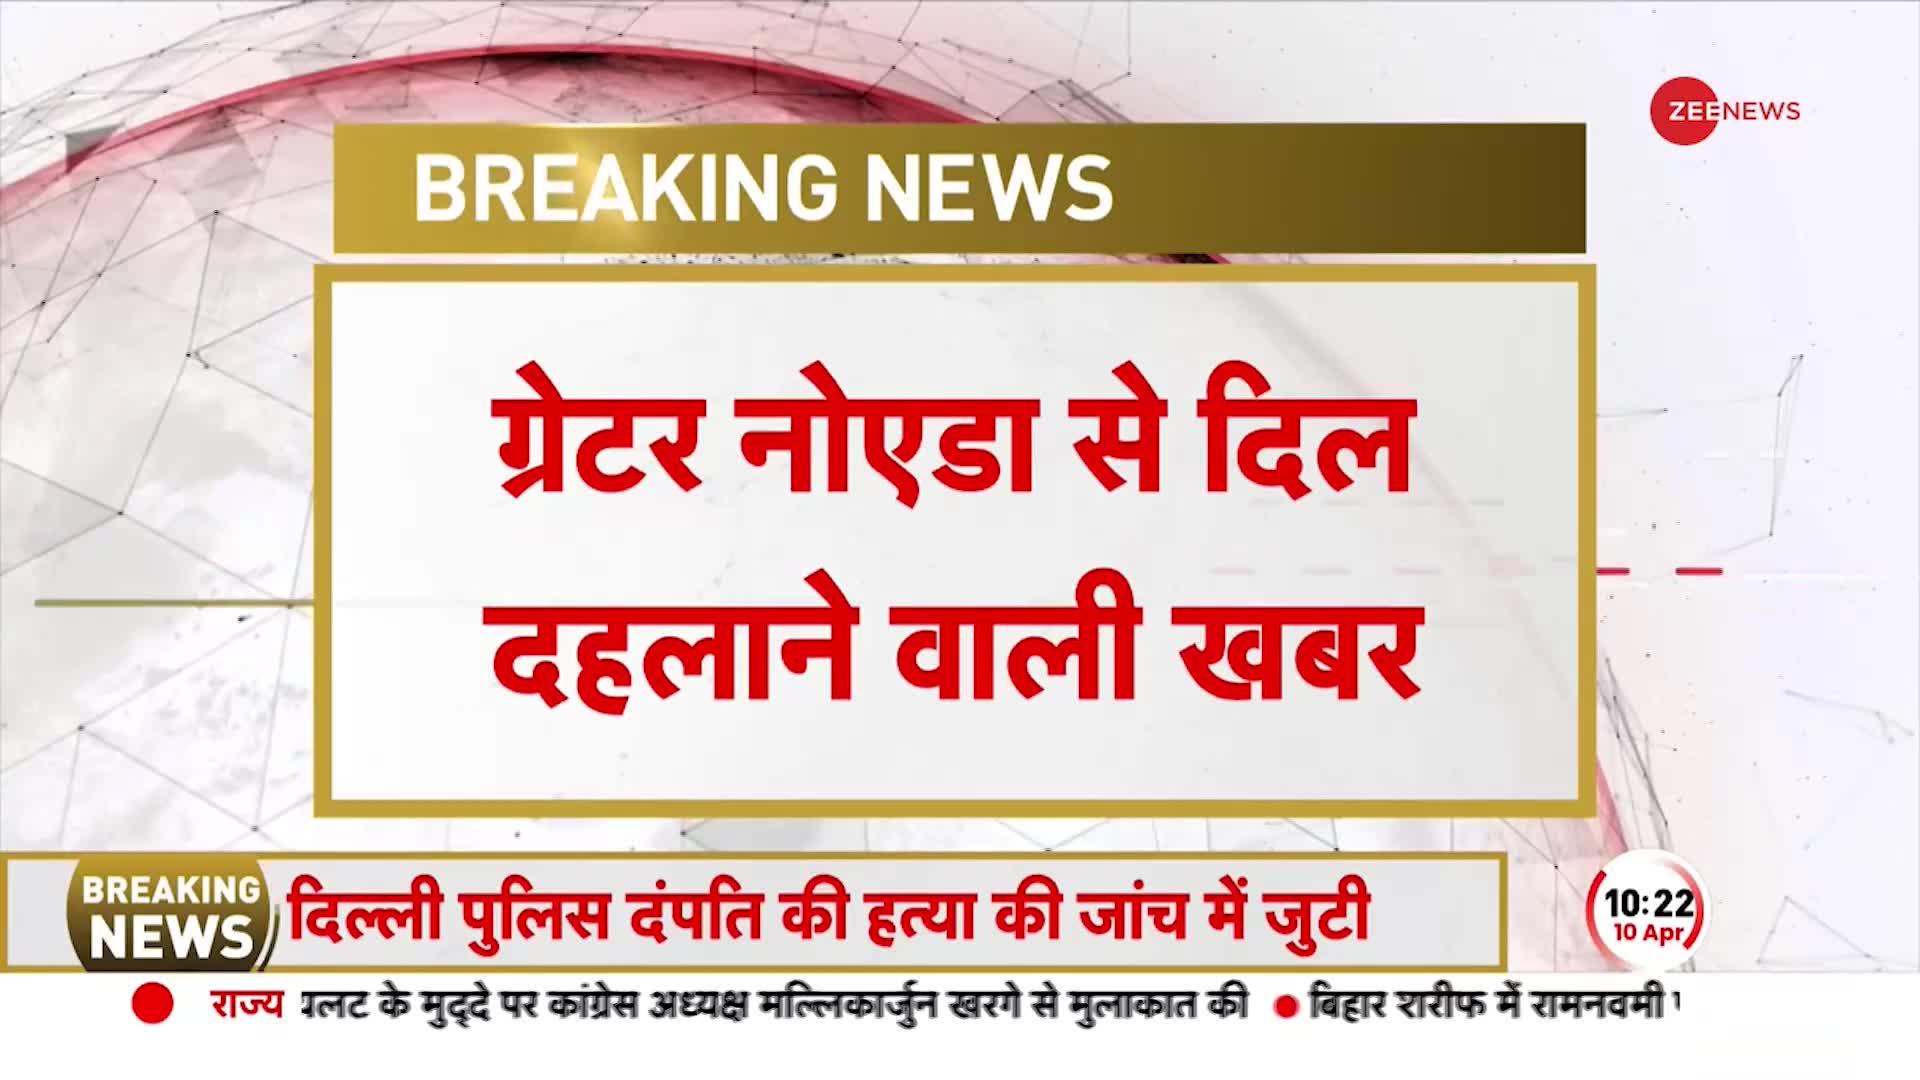 Breaking News: Greater Noida से दिल दहलाने वाली खबर, पड़ोसी के घर मिला लापता मासूम का शव